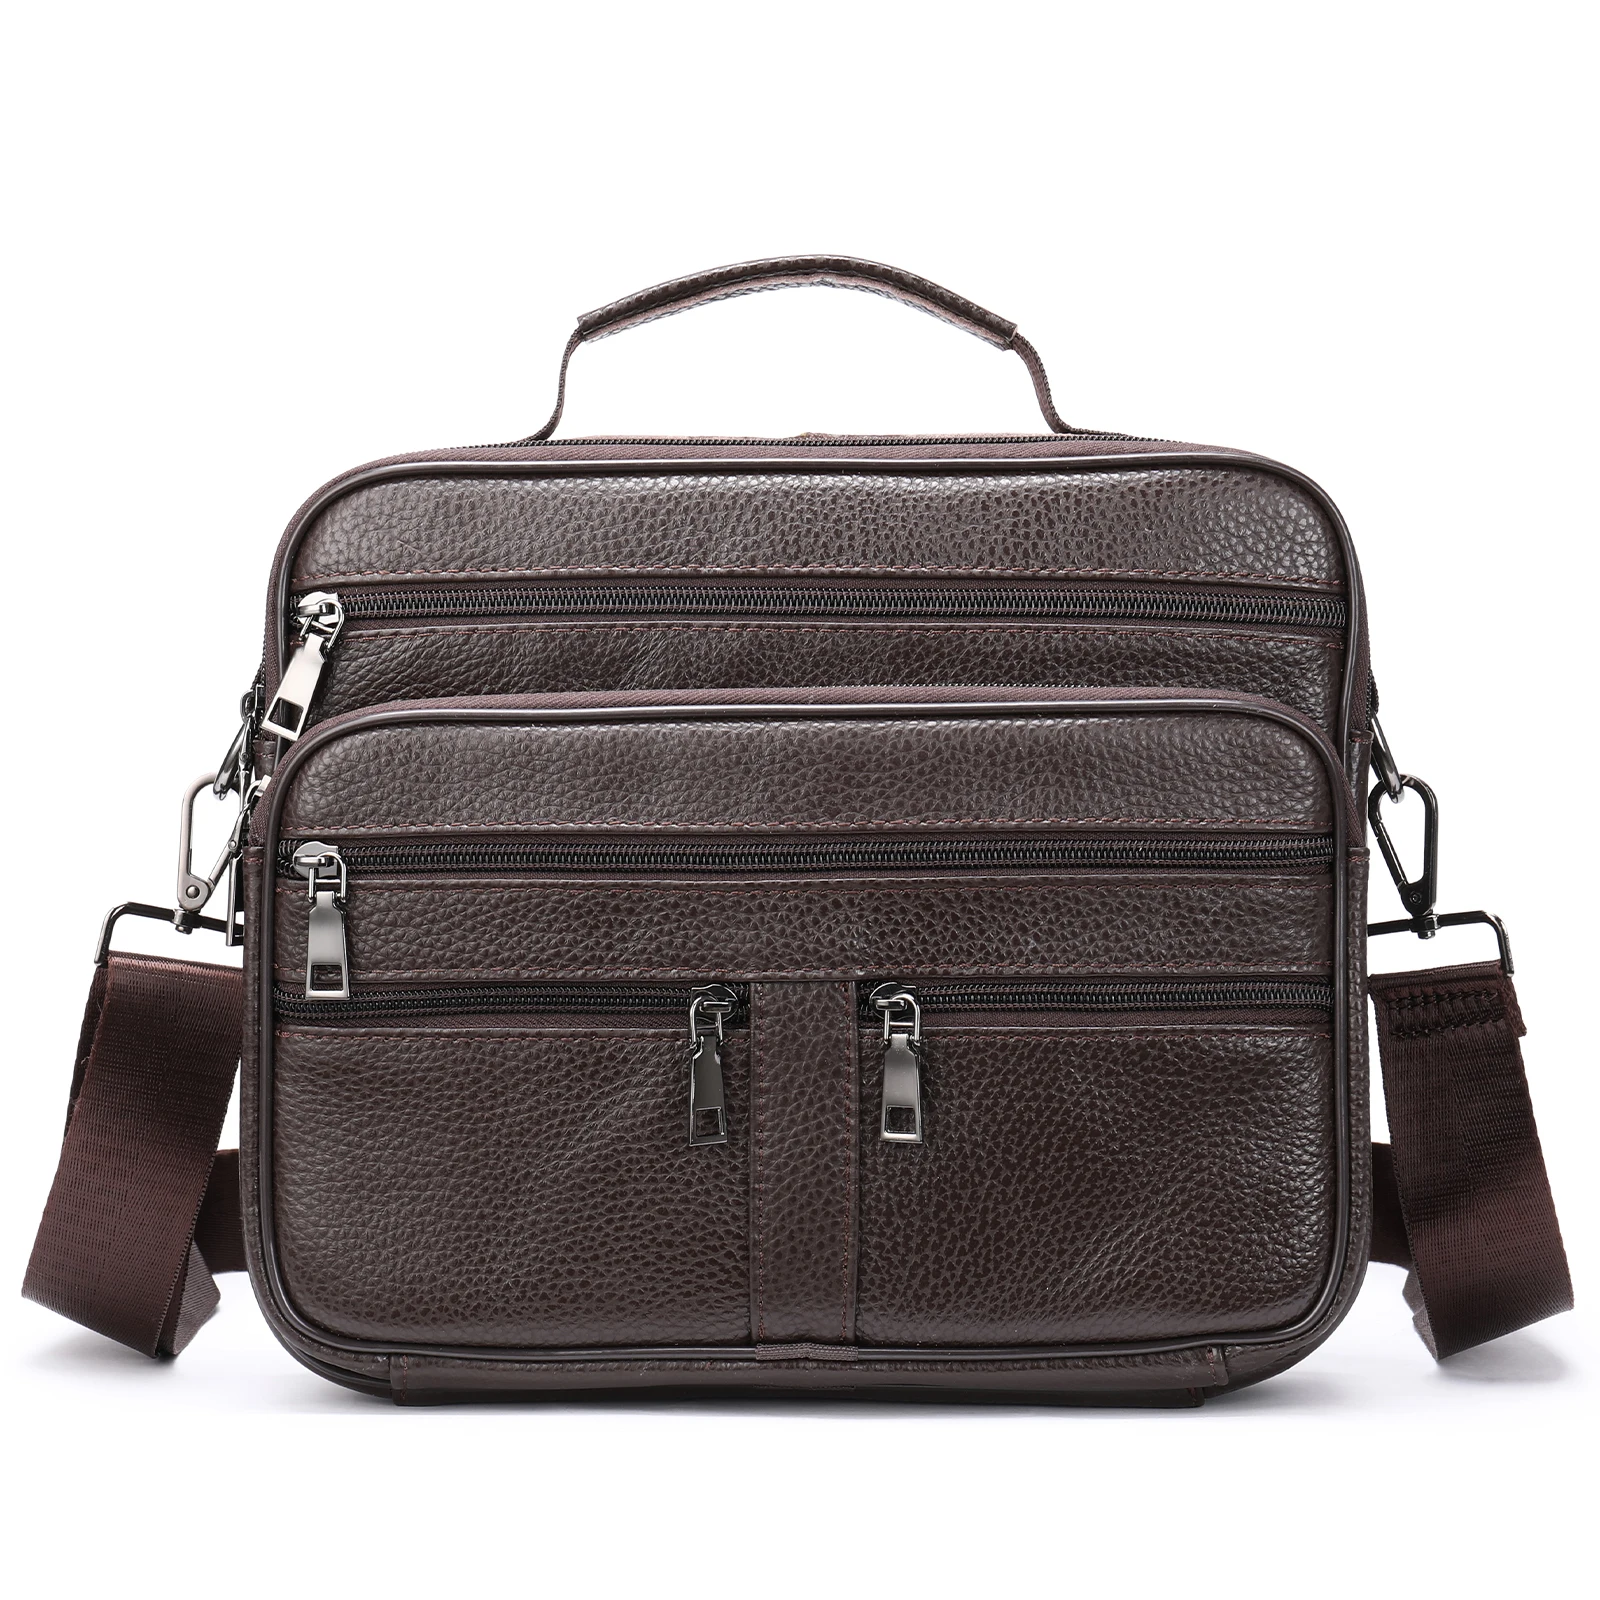 Genuine Leather Shoulder Bag for Men Black Cowhide Leather Handbag for M... - $54.27